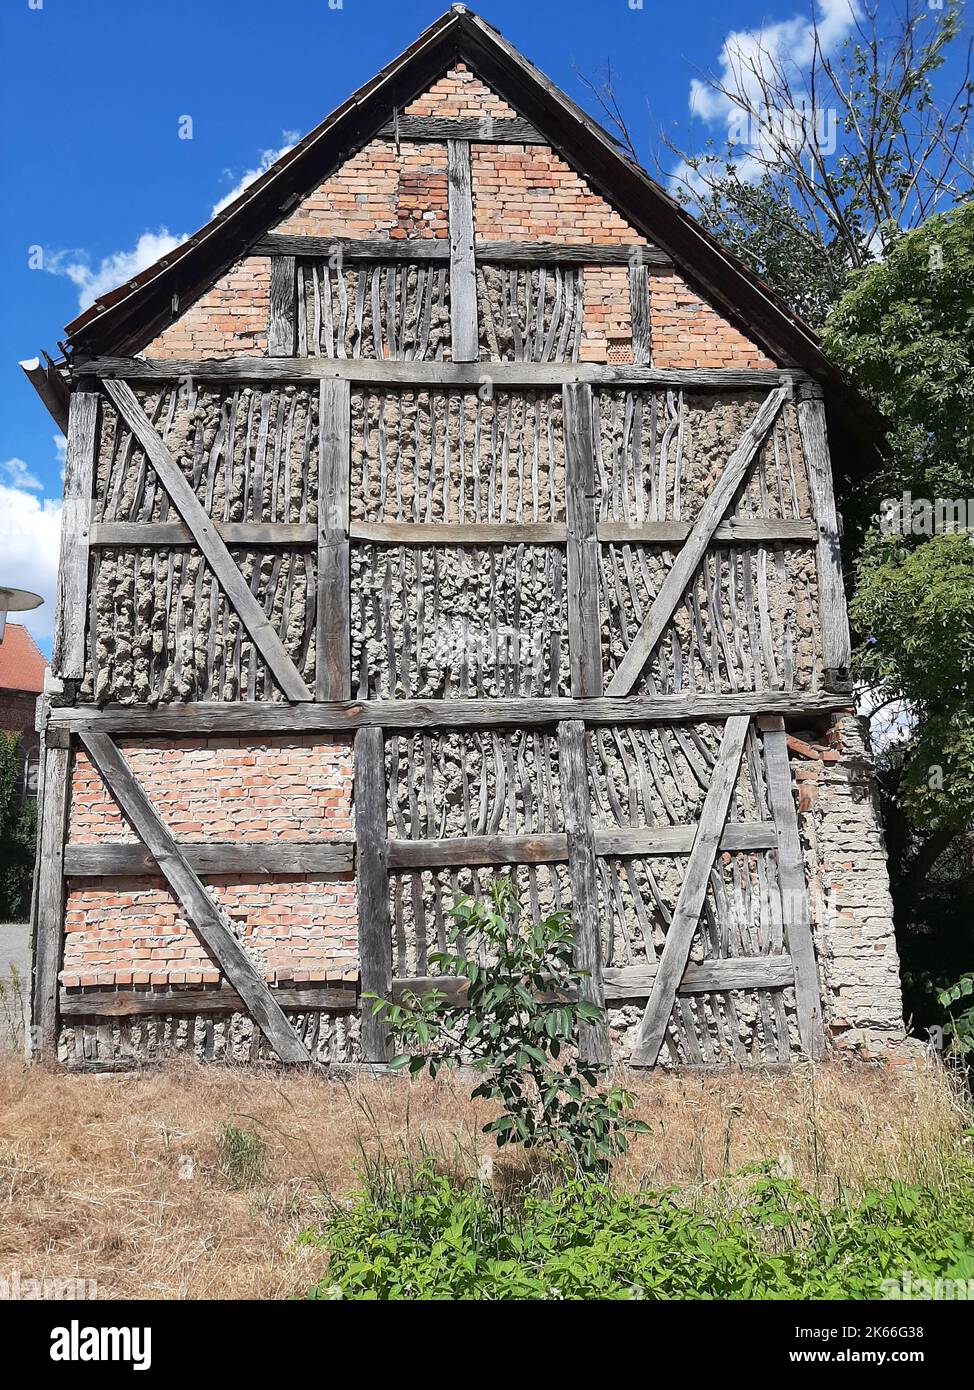 Toit d'une maison à colombages avec cloisons en argile, Allemagne, Brandebourg Banque D'Images